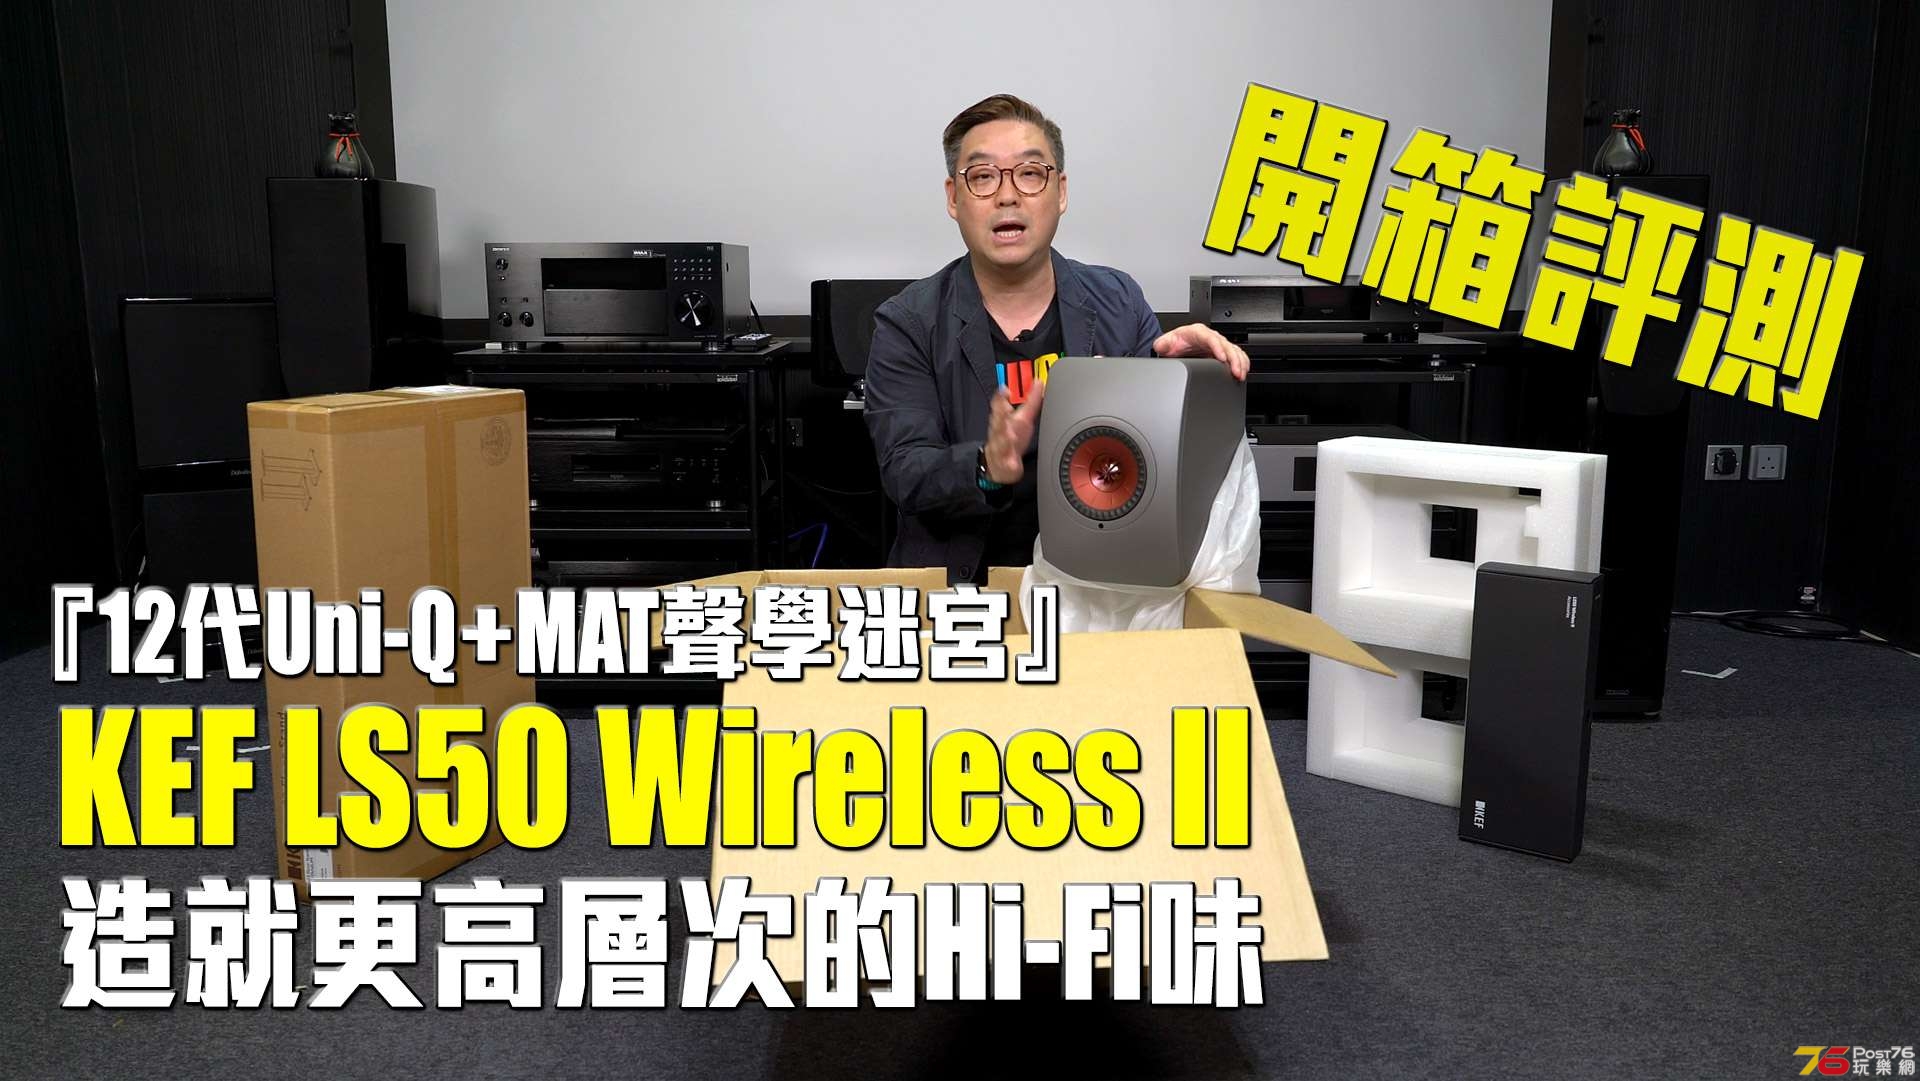 KEF-LS50-wireless-ii-unbox.jpg